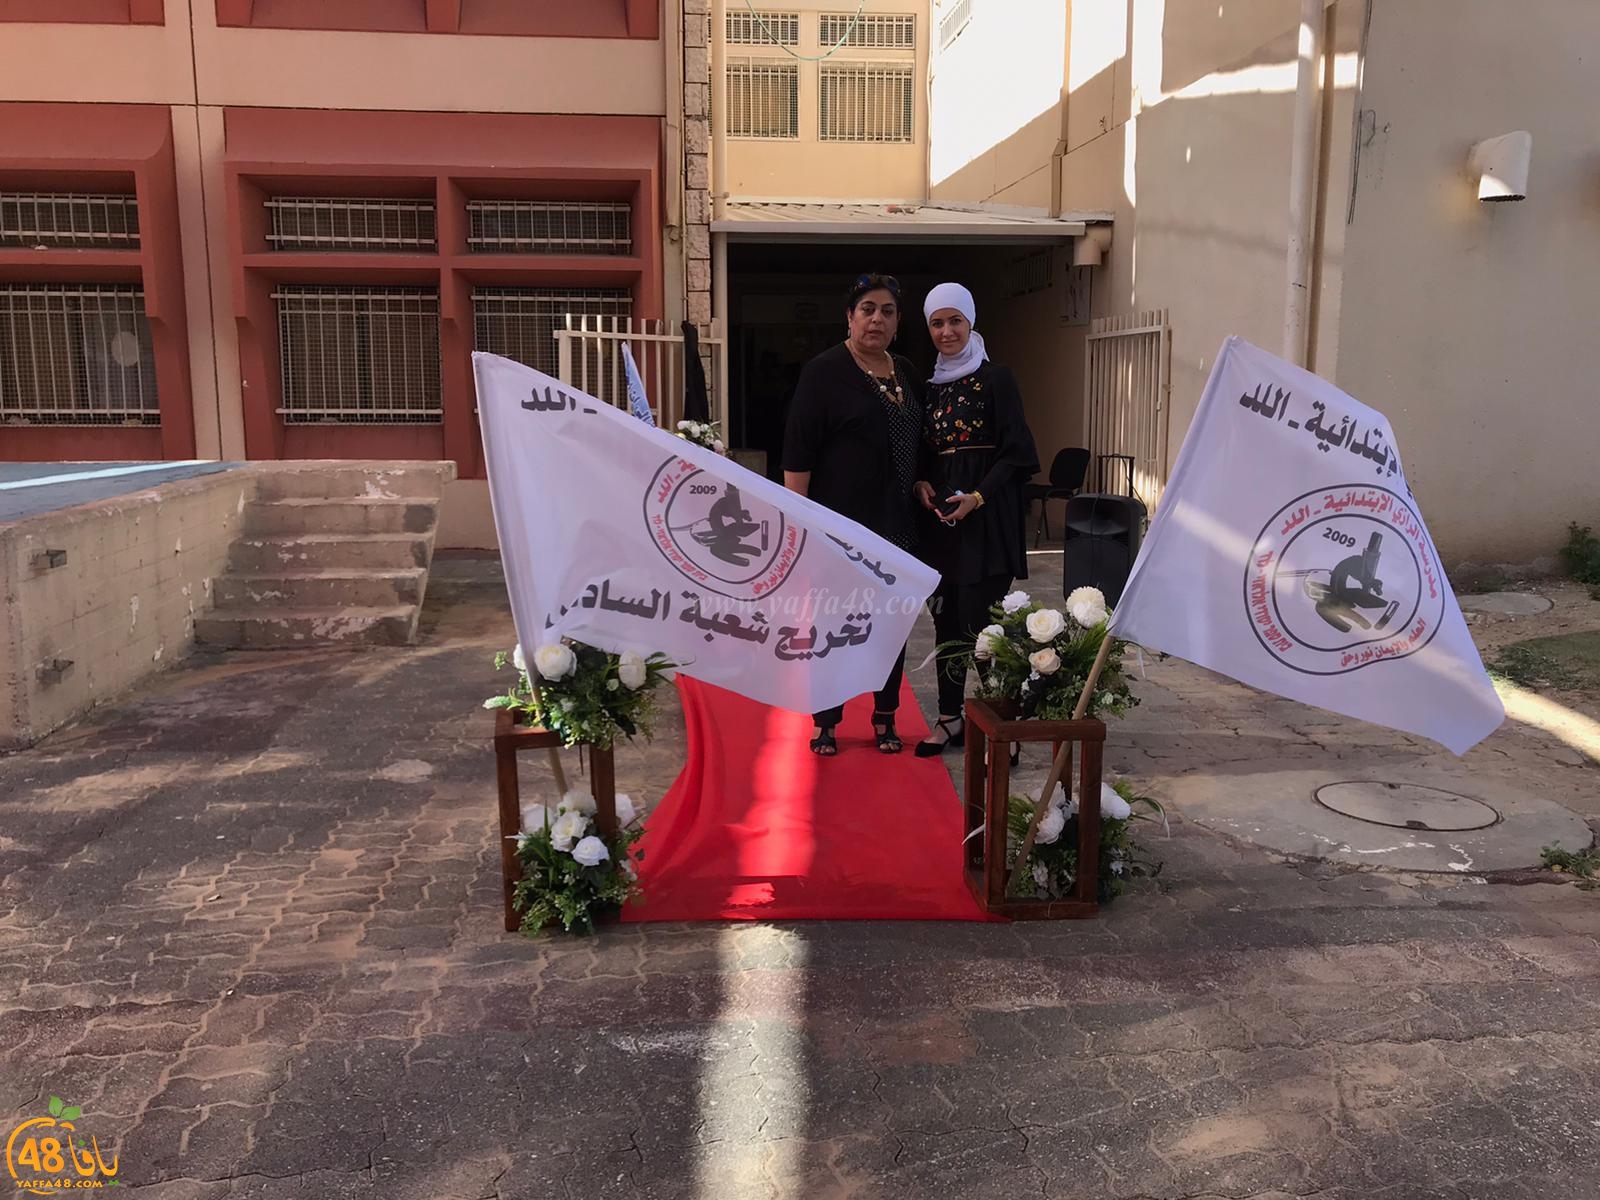 مدرسة الرازي الابتدائيّة في اللّد تحتفل بتخريج فوج من طلّابها